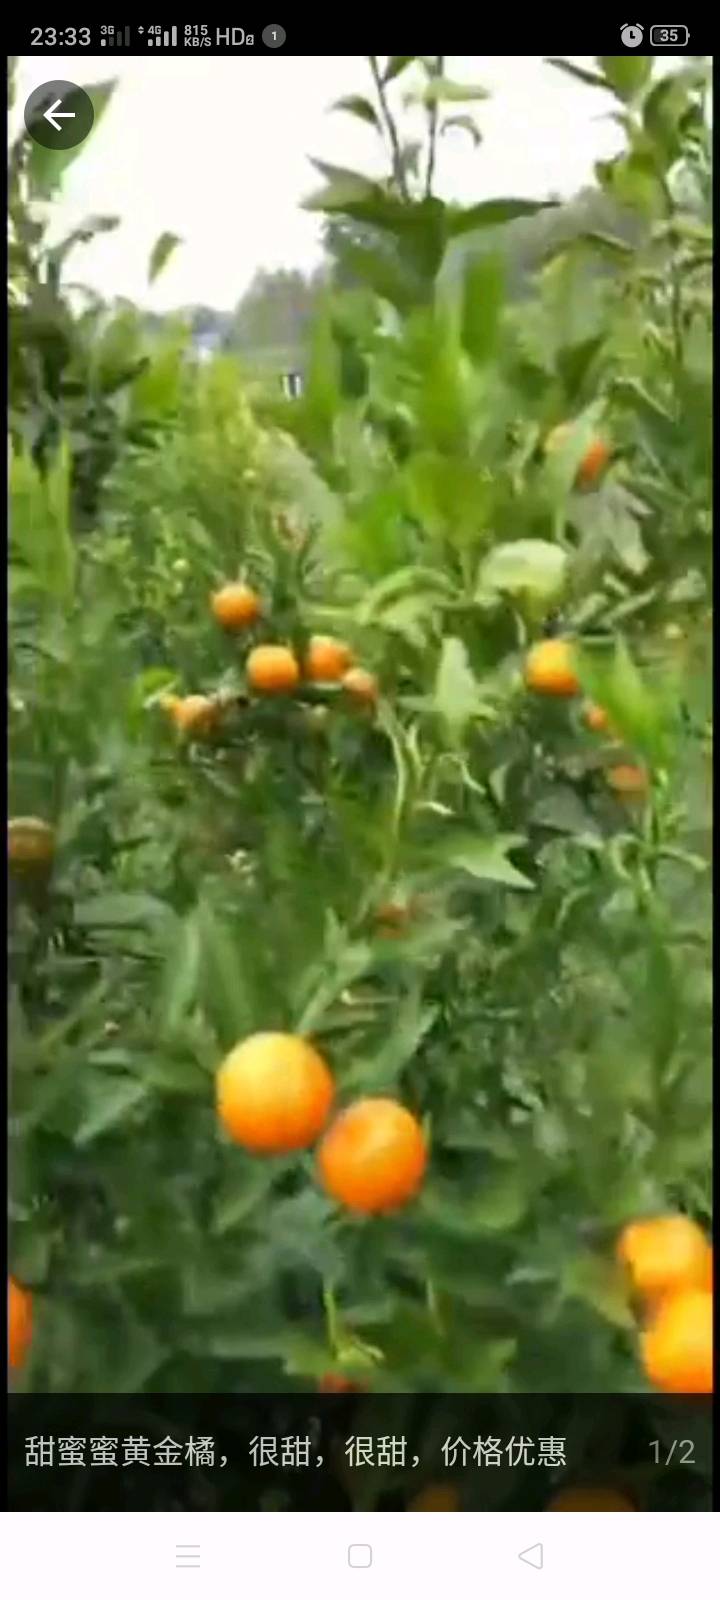 场地：安徽芜湖
100亩橘子树/9000棵树
目前有5000/8000斤橘子